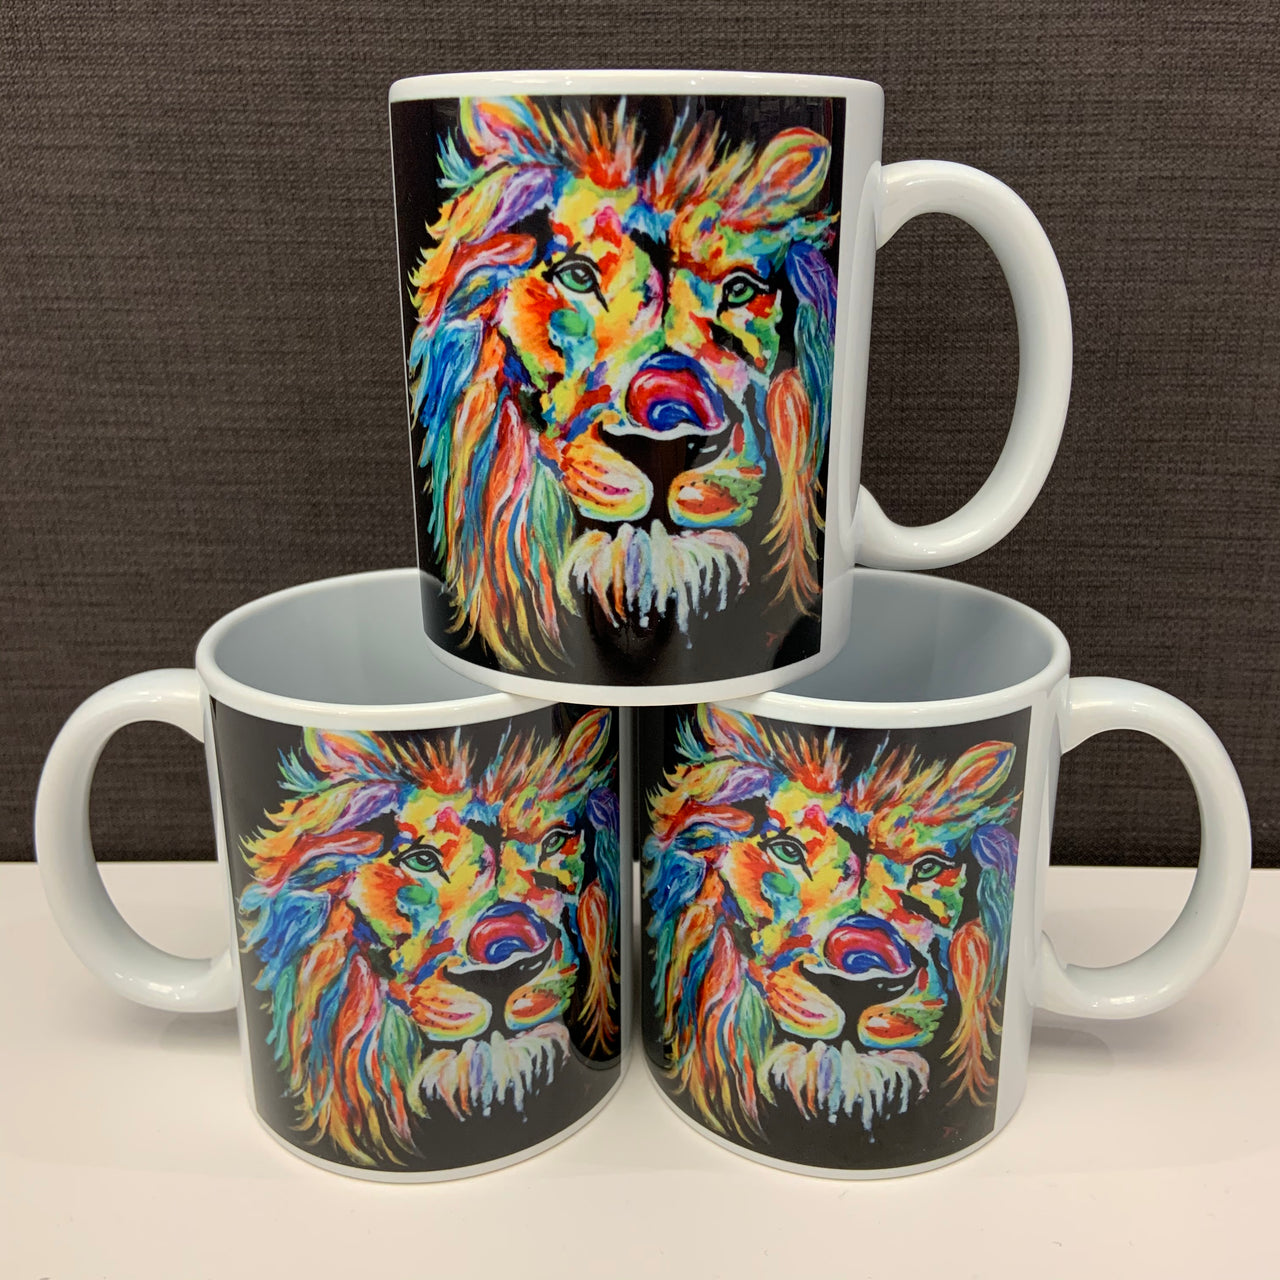 "The Rainbow Lion" Coffee Mugs